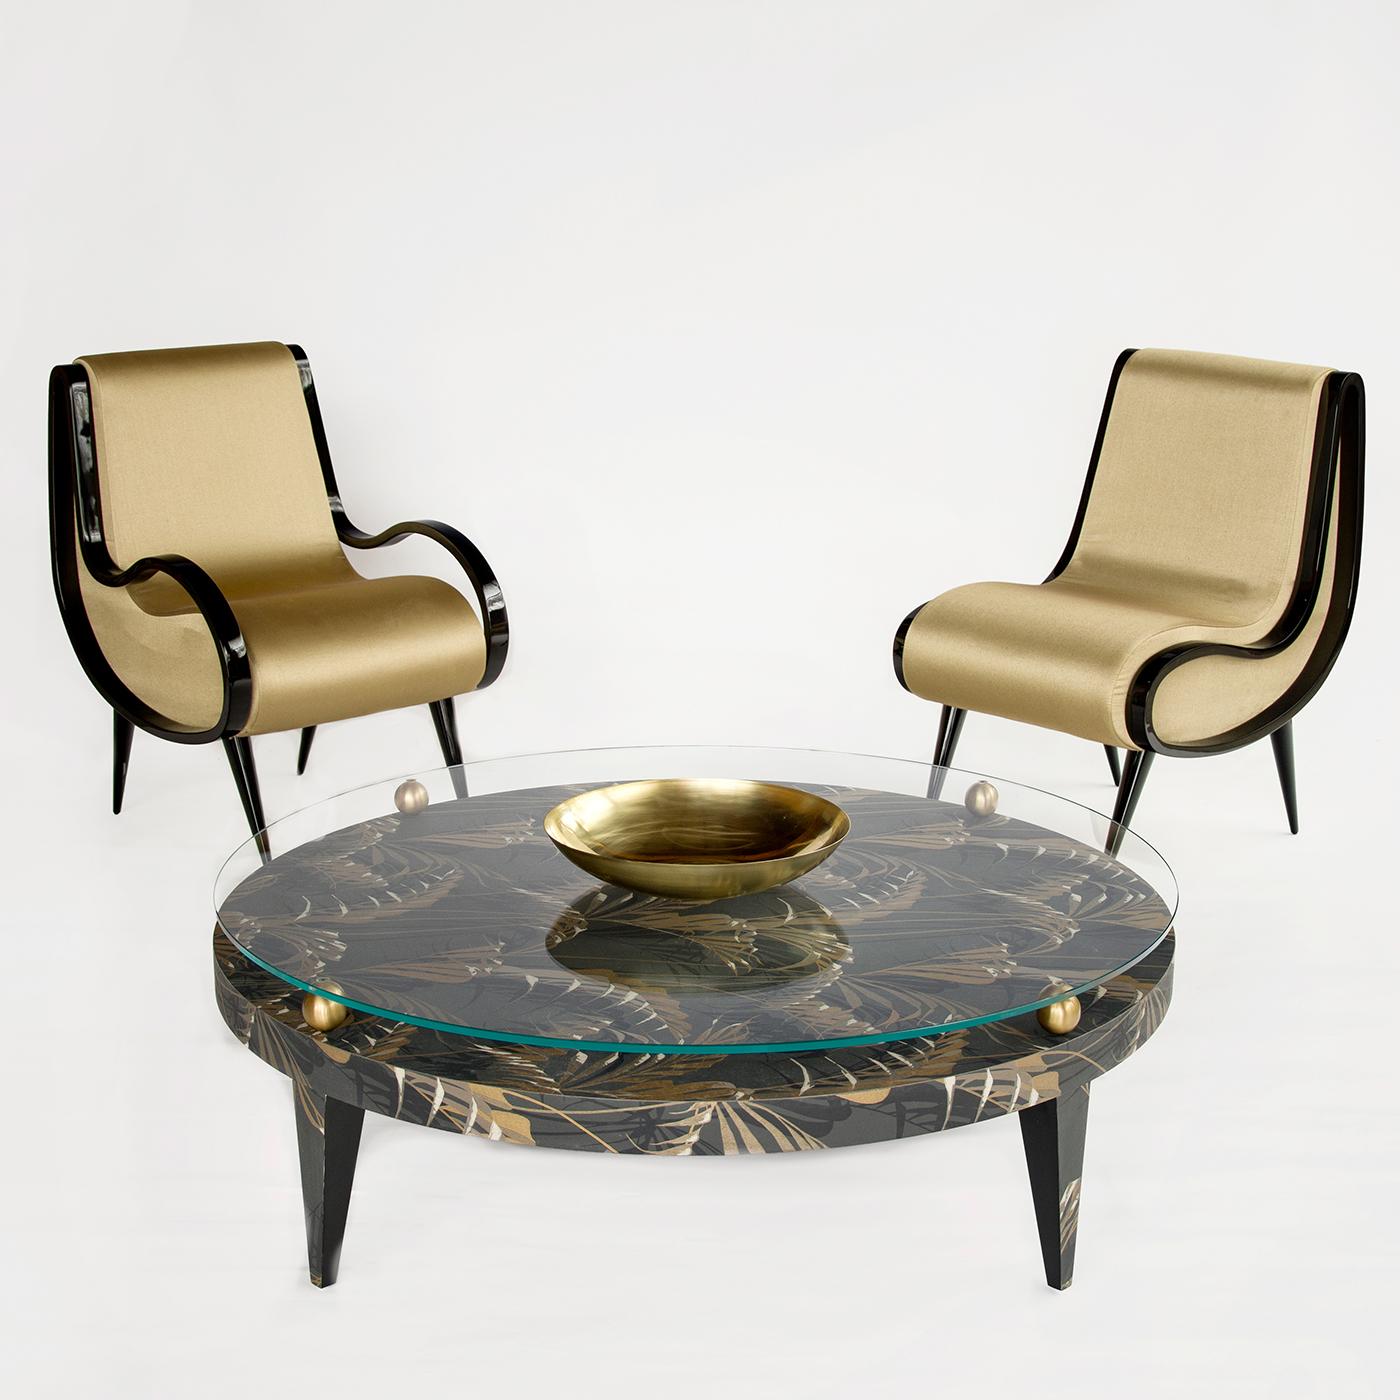 Der Sessel eclipse zeichnet sich durch ein modernes und elegantes Design aus, ein Möbelstück, das in ganz unterschiedliche Interieurs passt, von den traditionellsten bis zu den modernsten und raffiniertesten. Seine originelle Struktur mit